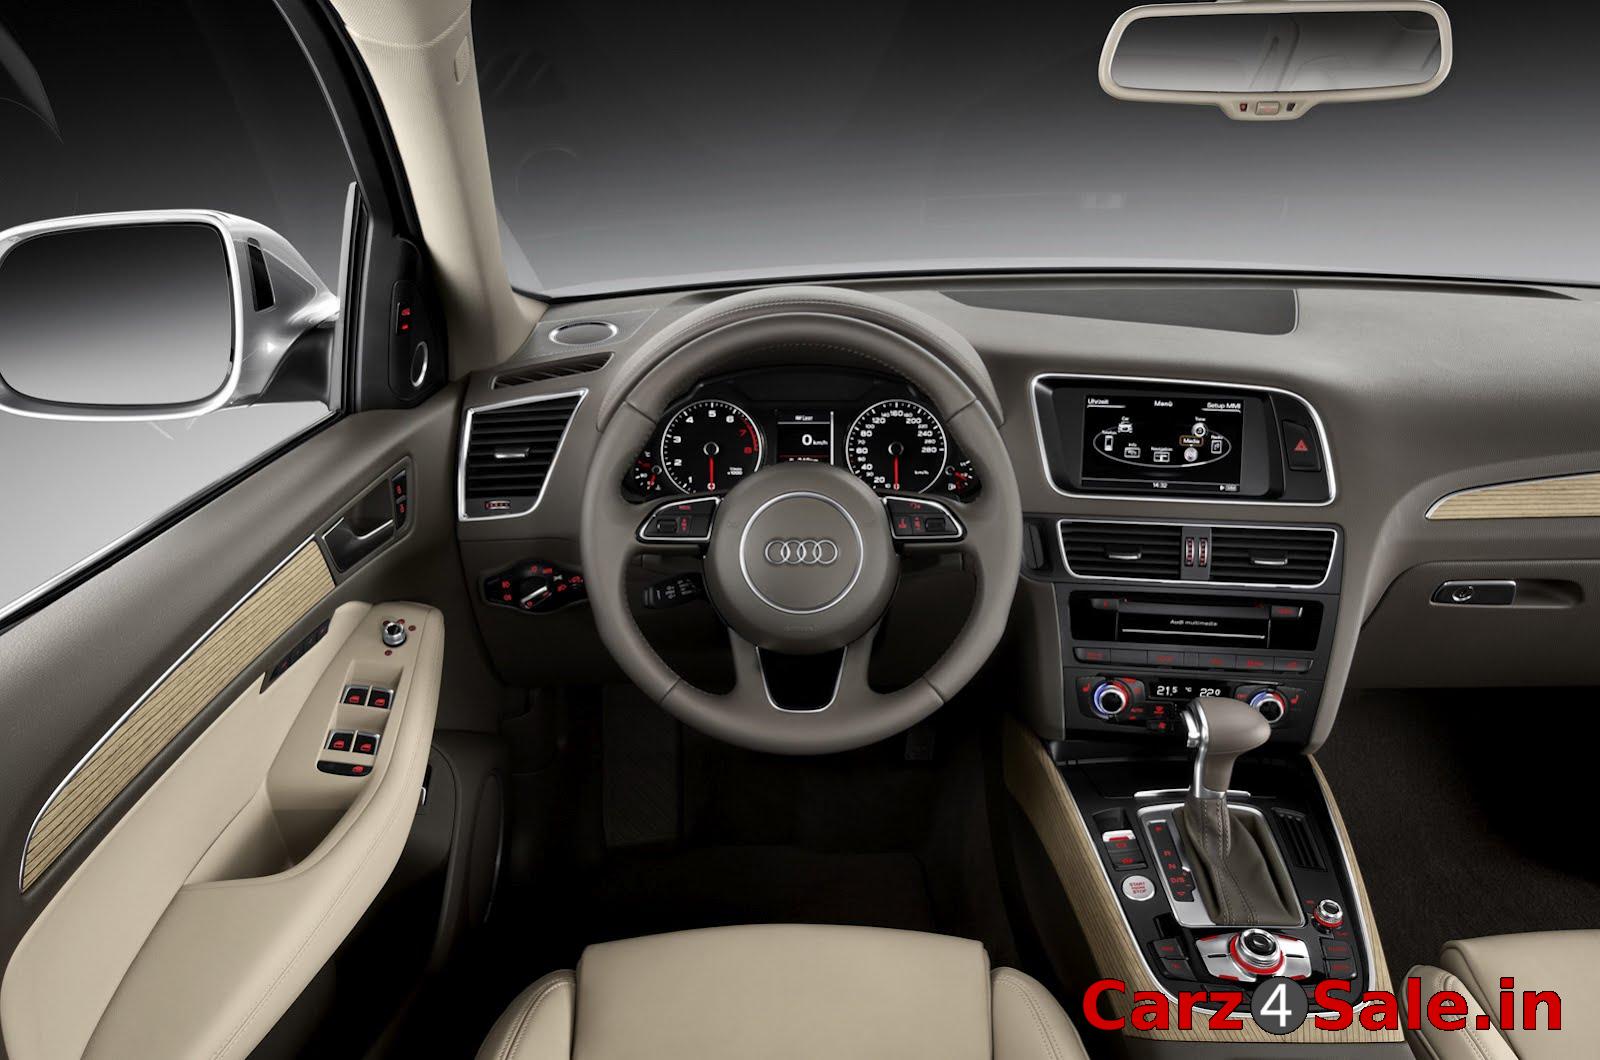 2013 Audi Q5 interior